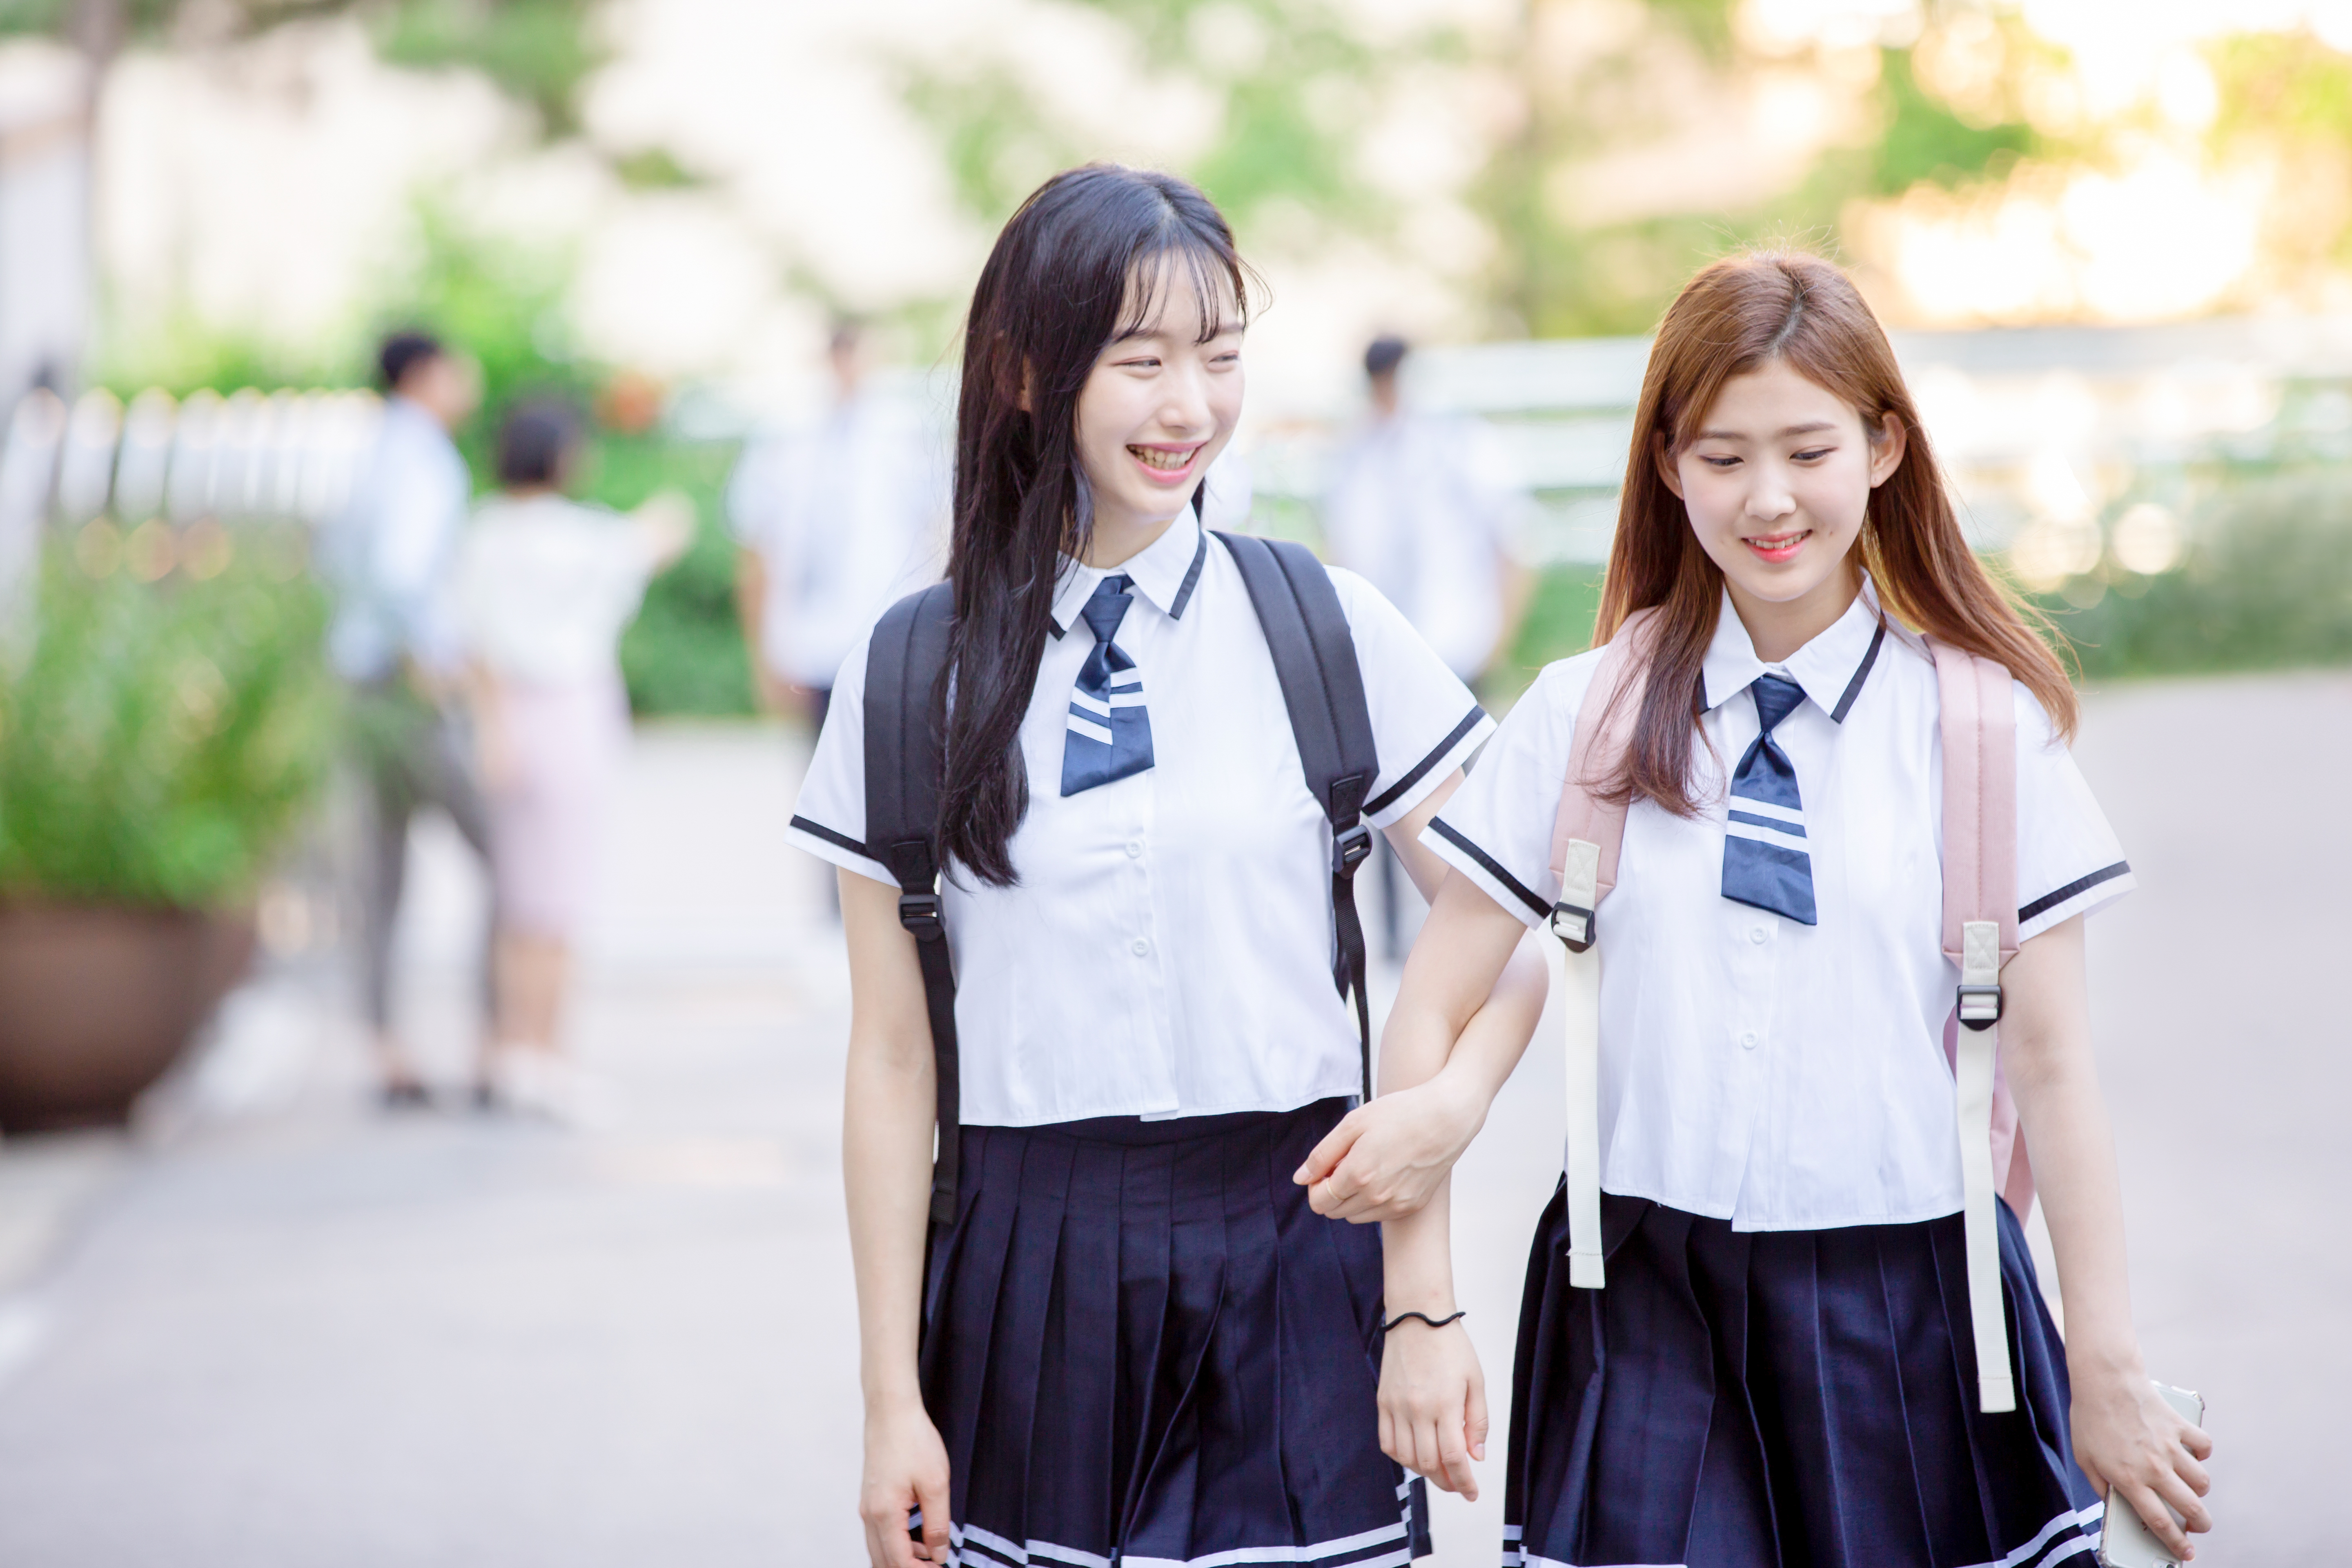 두 여학생이 밝은 표정으로 학교를 향하고 있는 이미지 사진